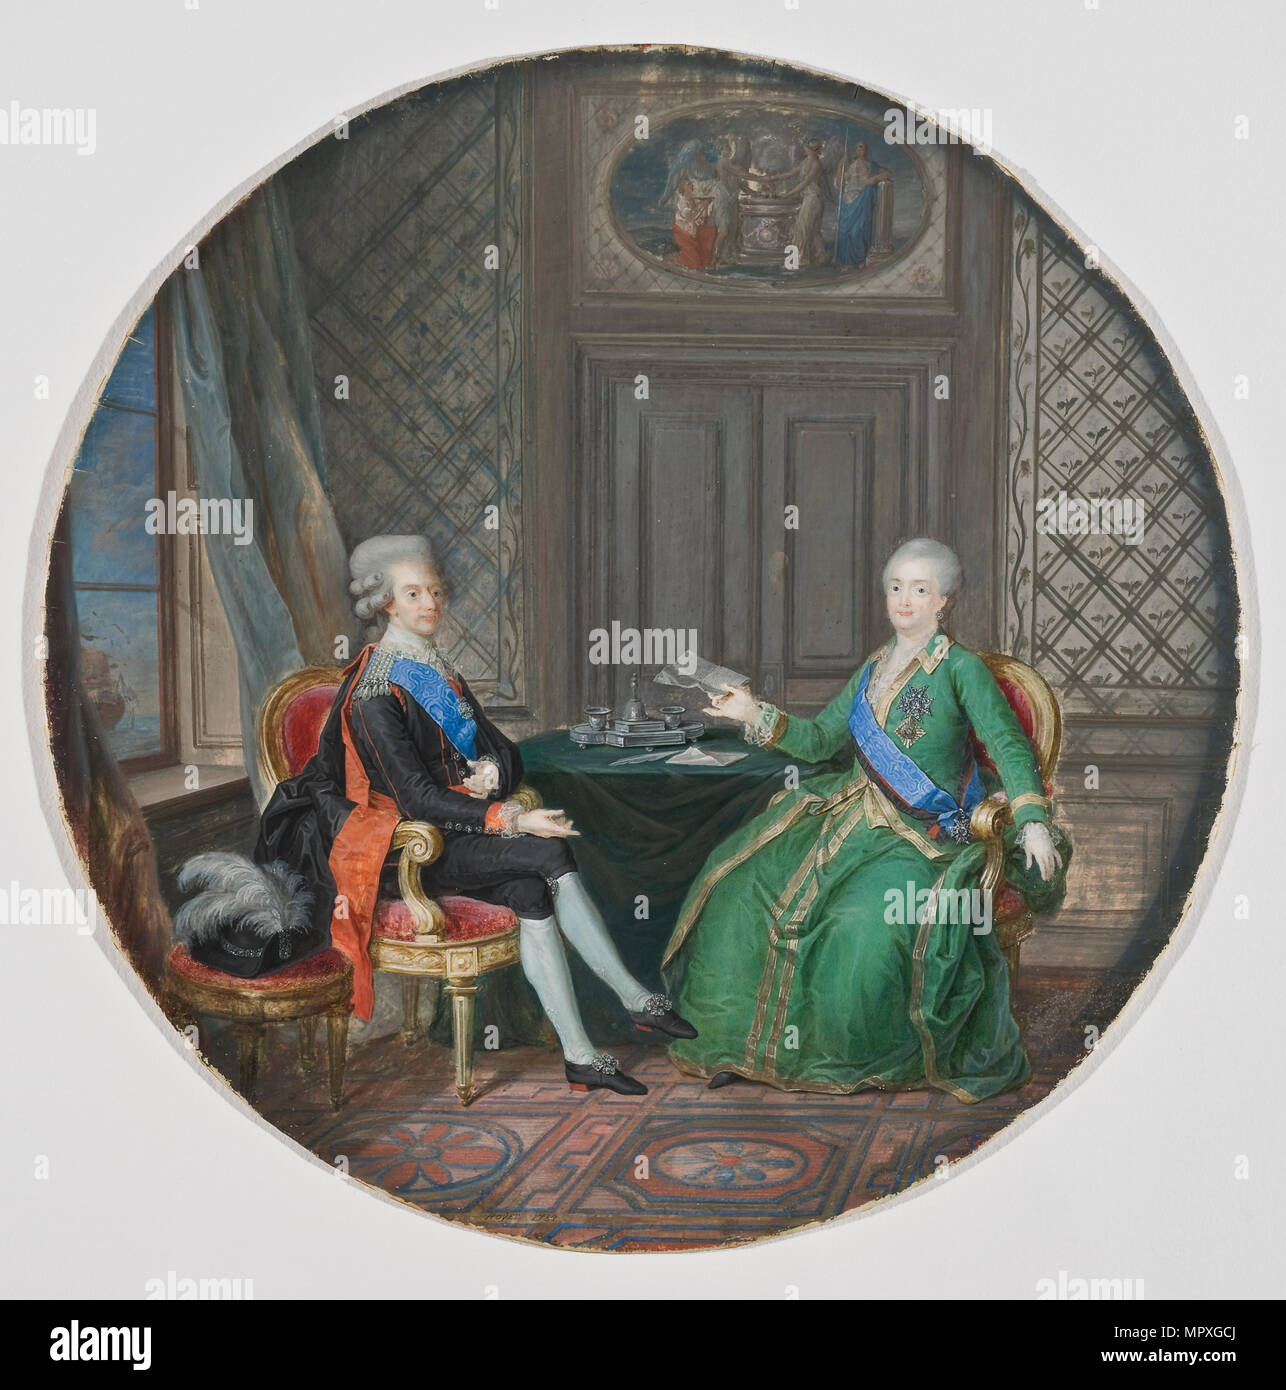 King Gustav III of Sweden and Catherine II of Russia in Fredrikshamn, 1784. Stock Photo